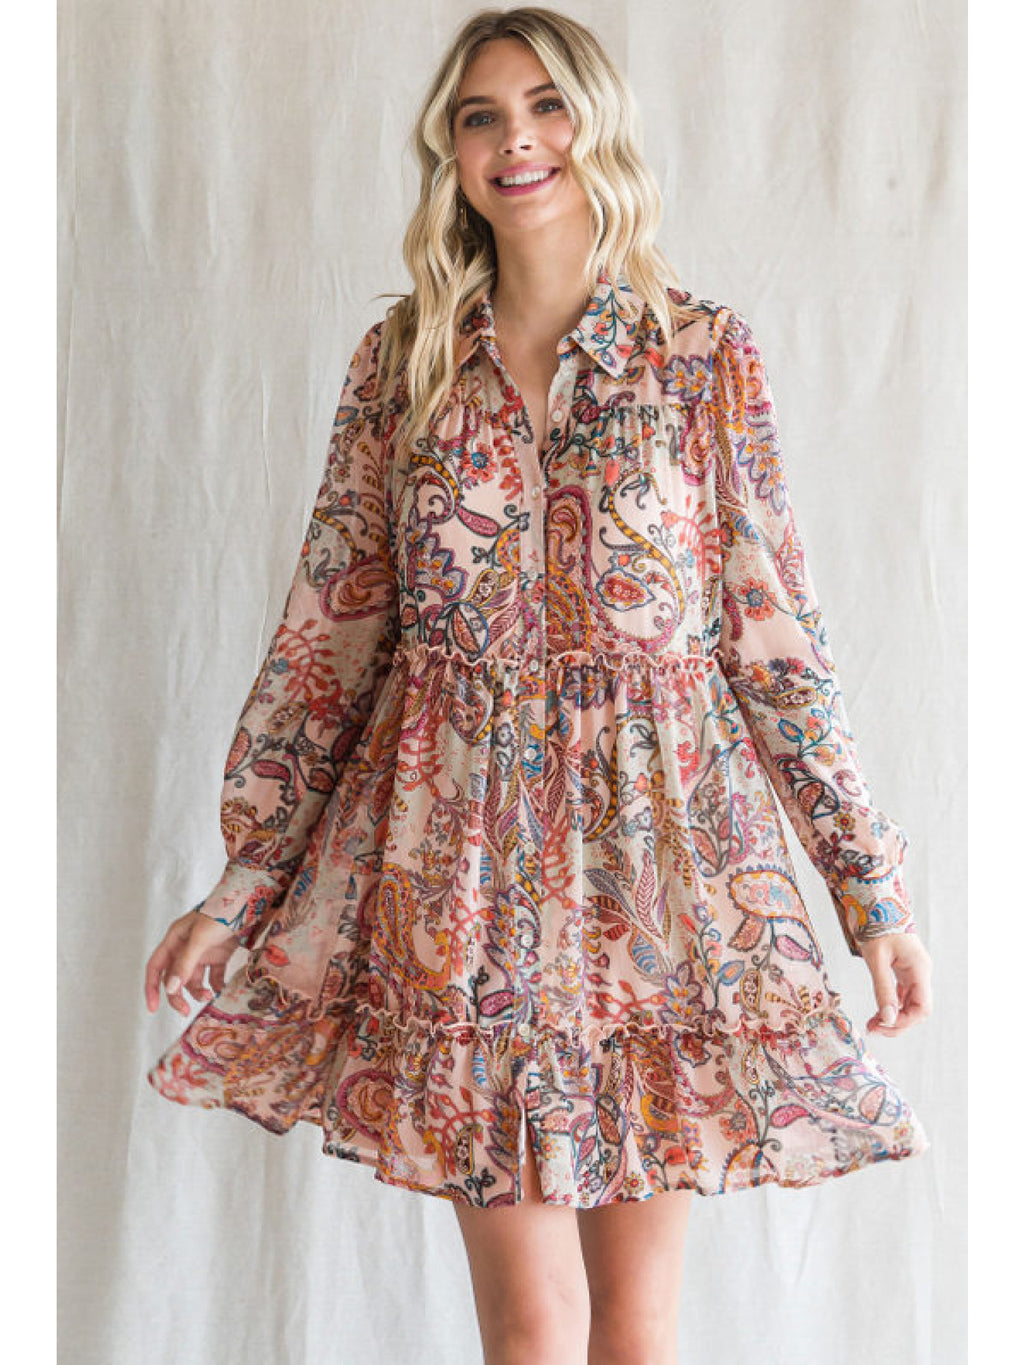 Jodifl Paisley Pattern Dress